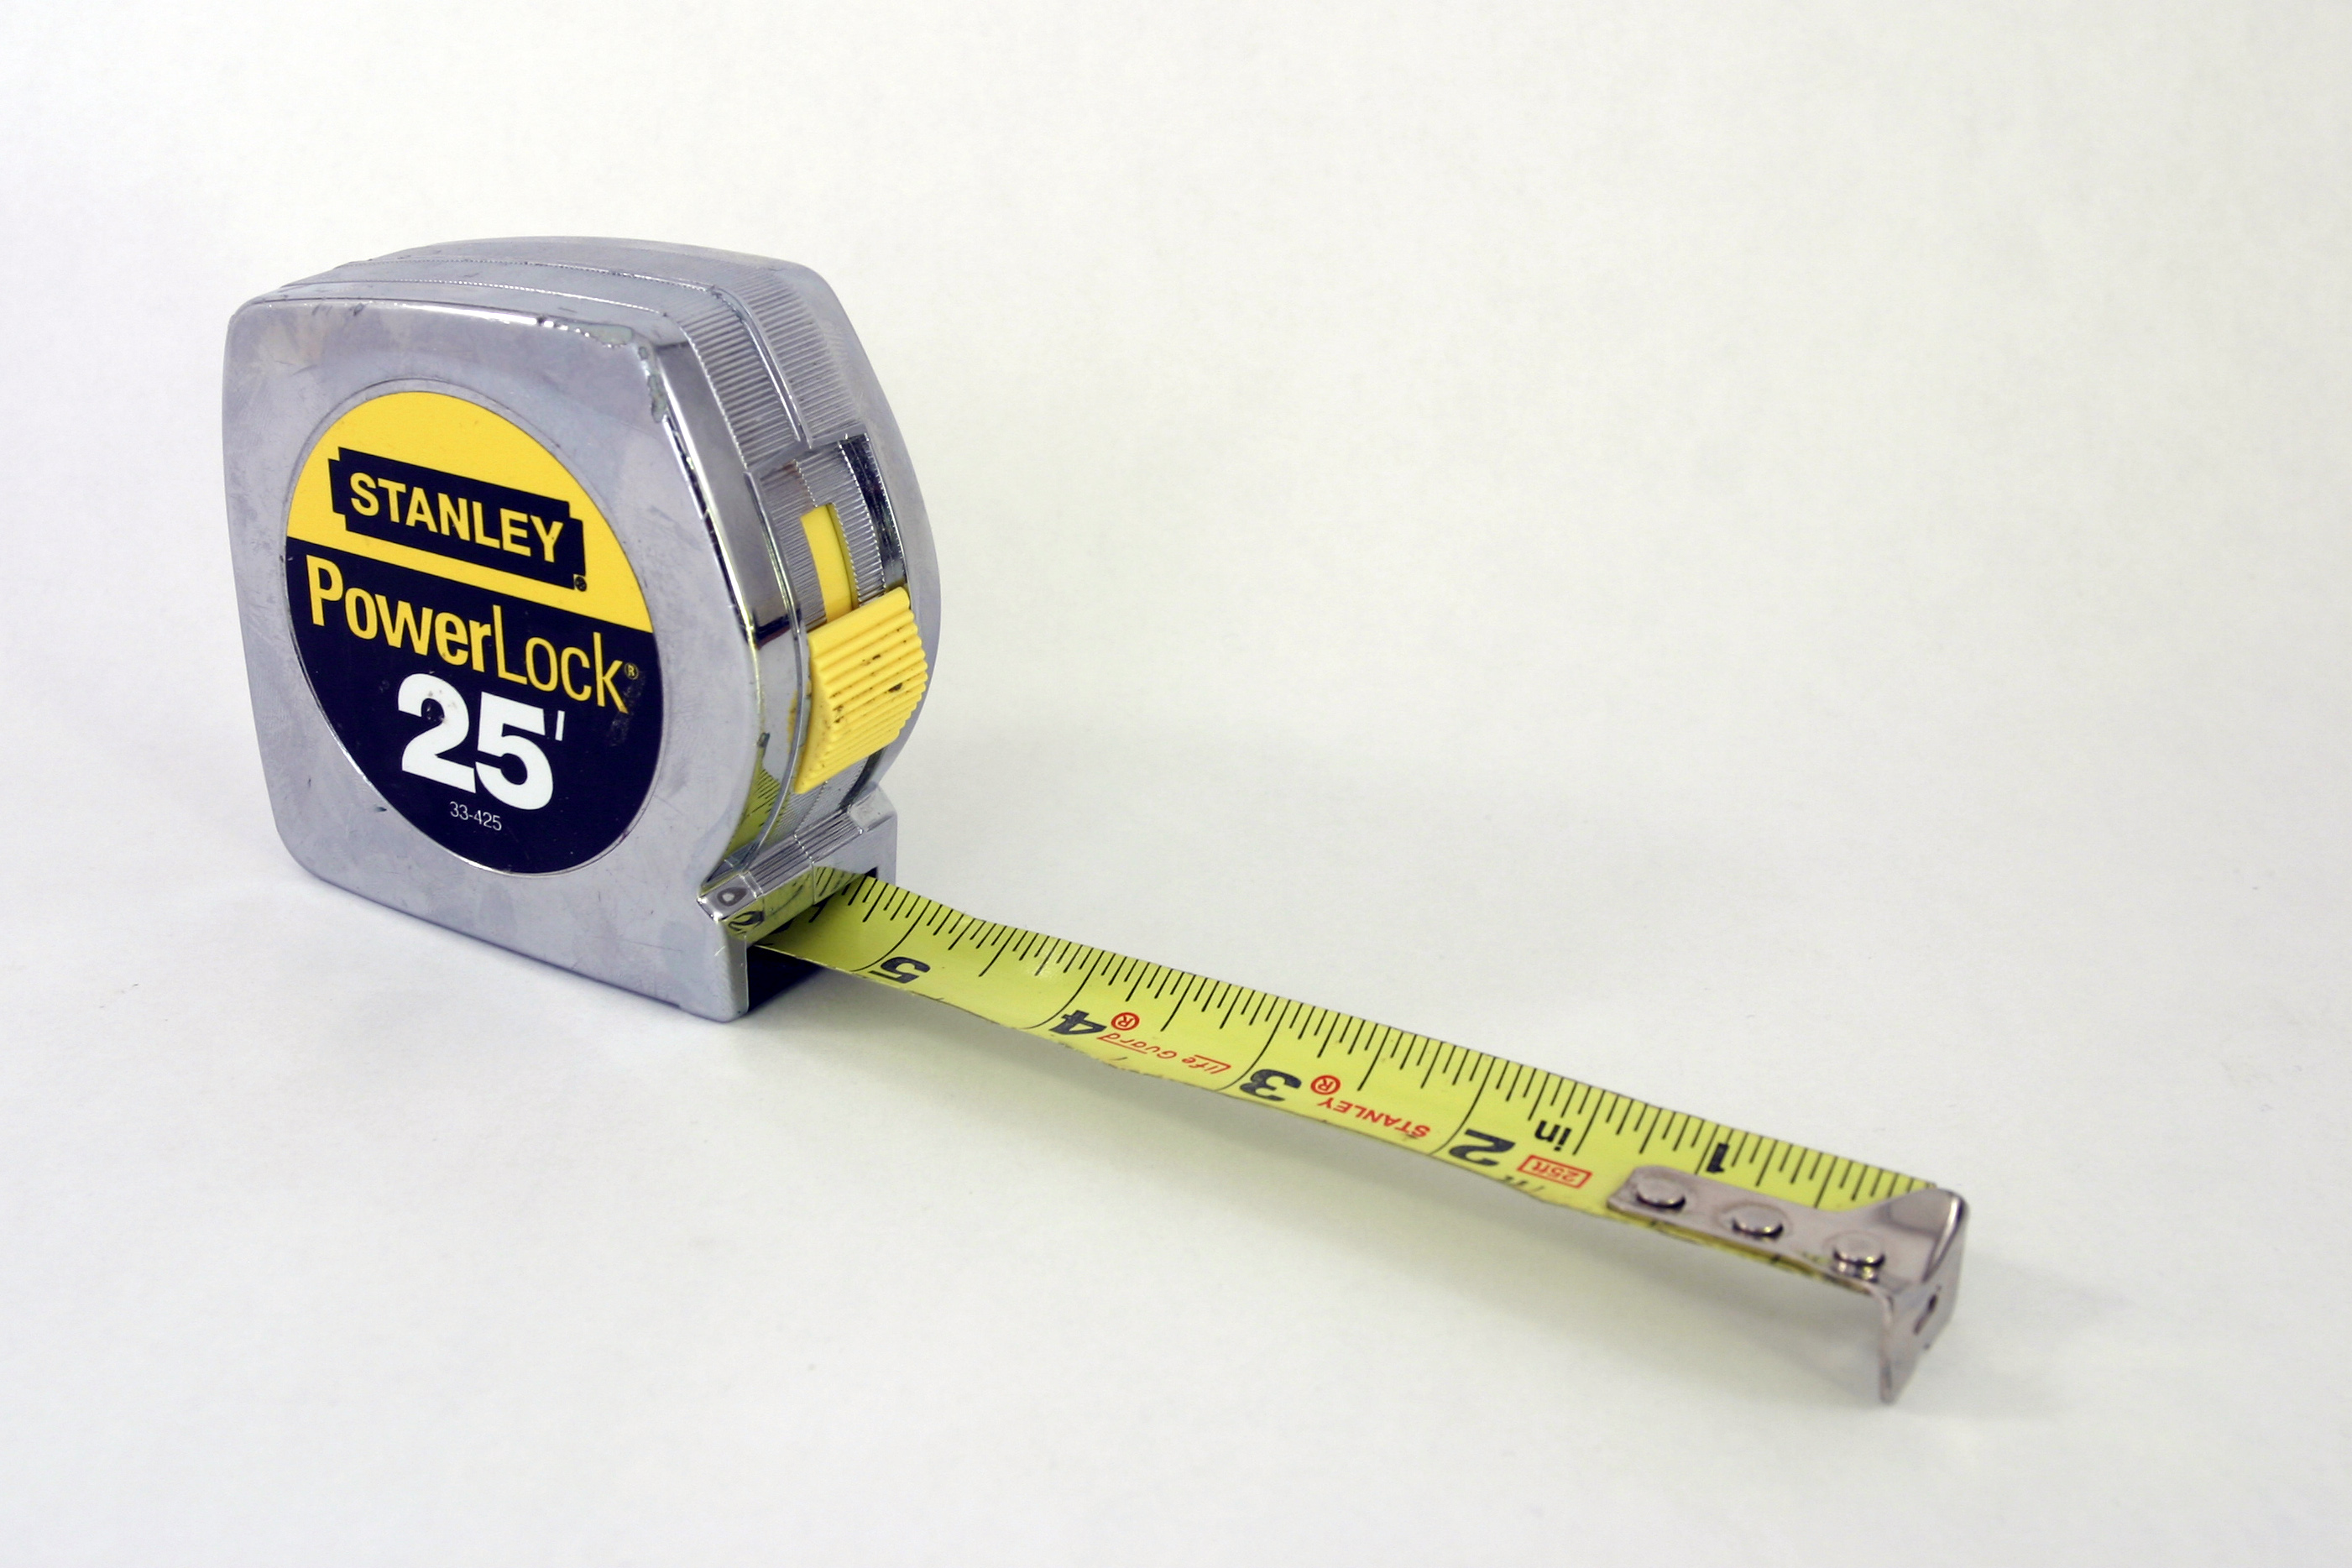 Stanley PowerLock tape measure